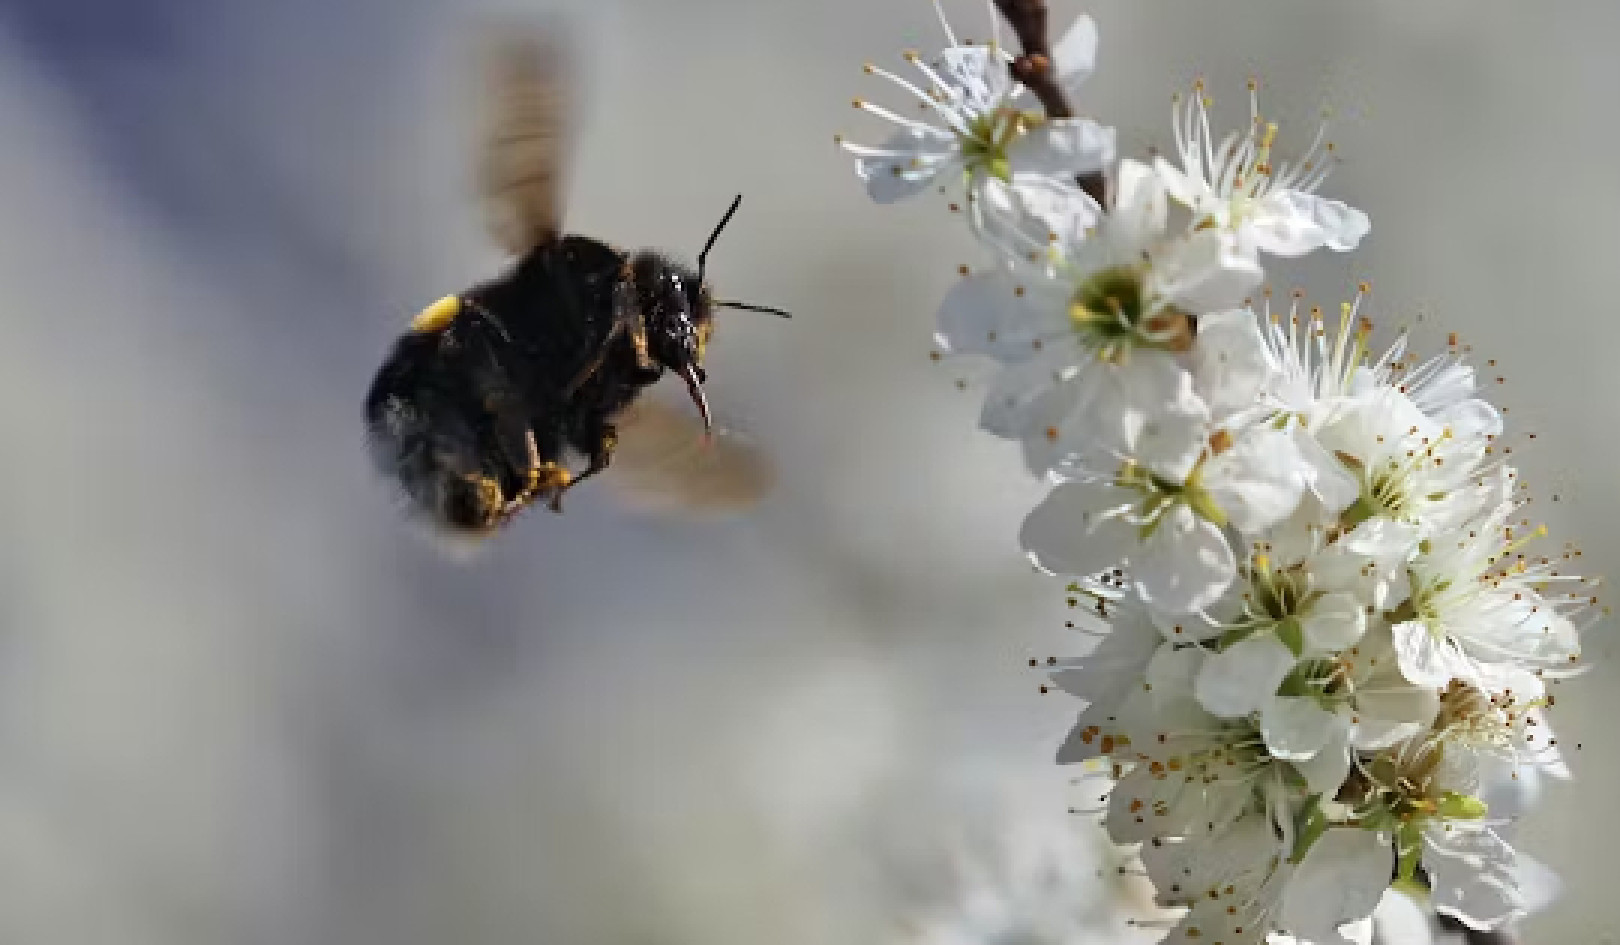 Ξεκλειδώνοντας τα μυστικά των μελισσών: Πώς αντιλαμβάνονται, πλοηγούνται και ευδοκιμούν